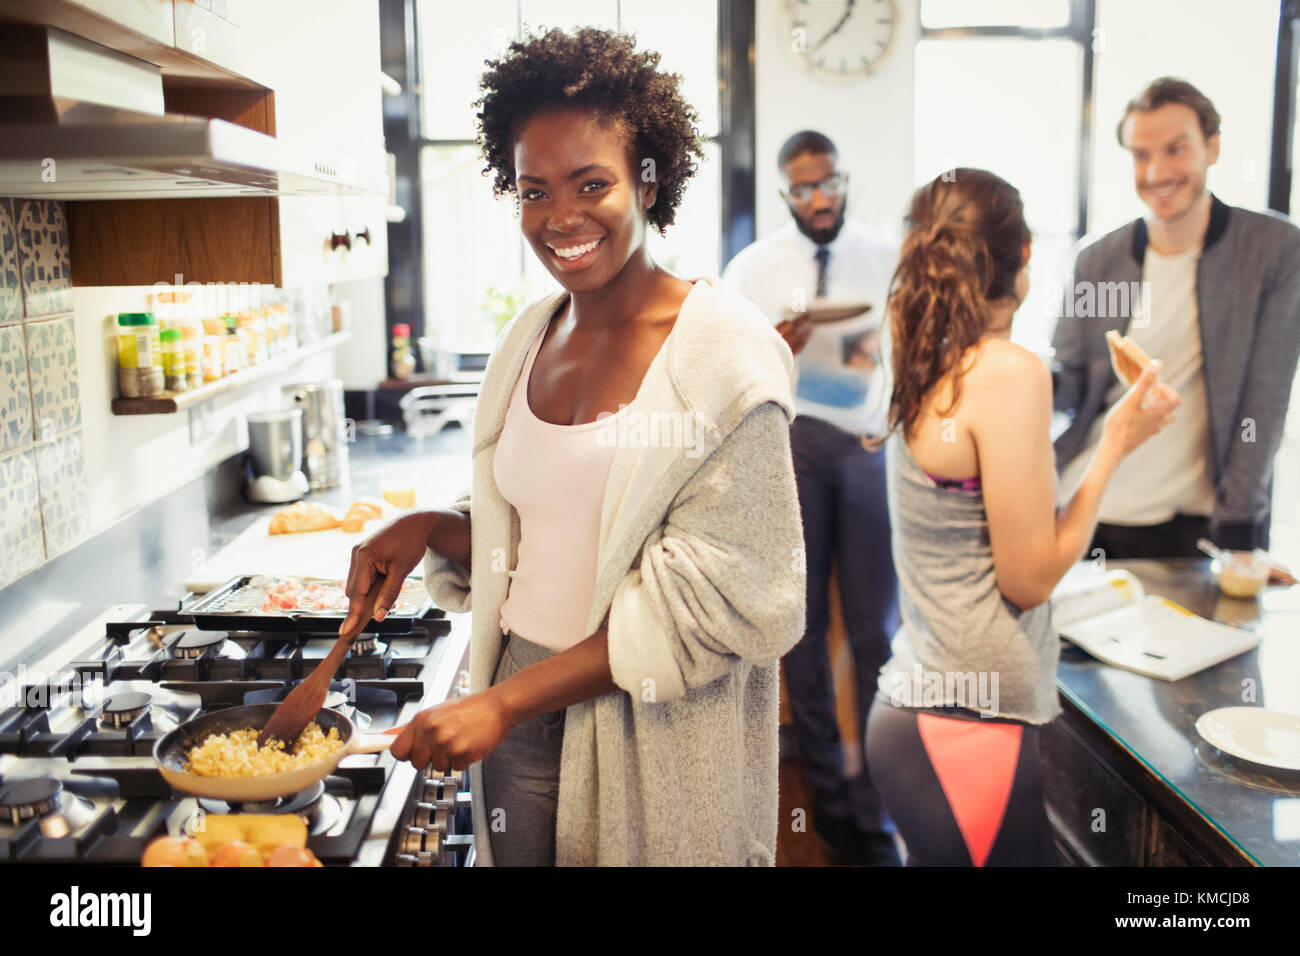 Ritratto sorridente donna che cucina uova strapazzate al piano cottura in cucina Foto Stock